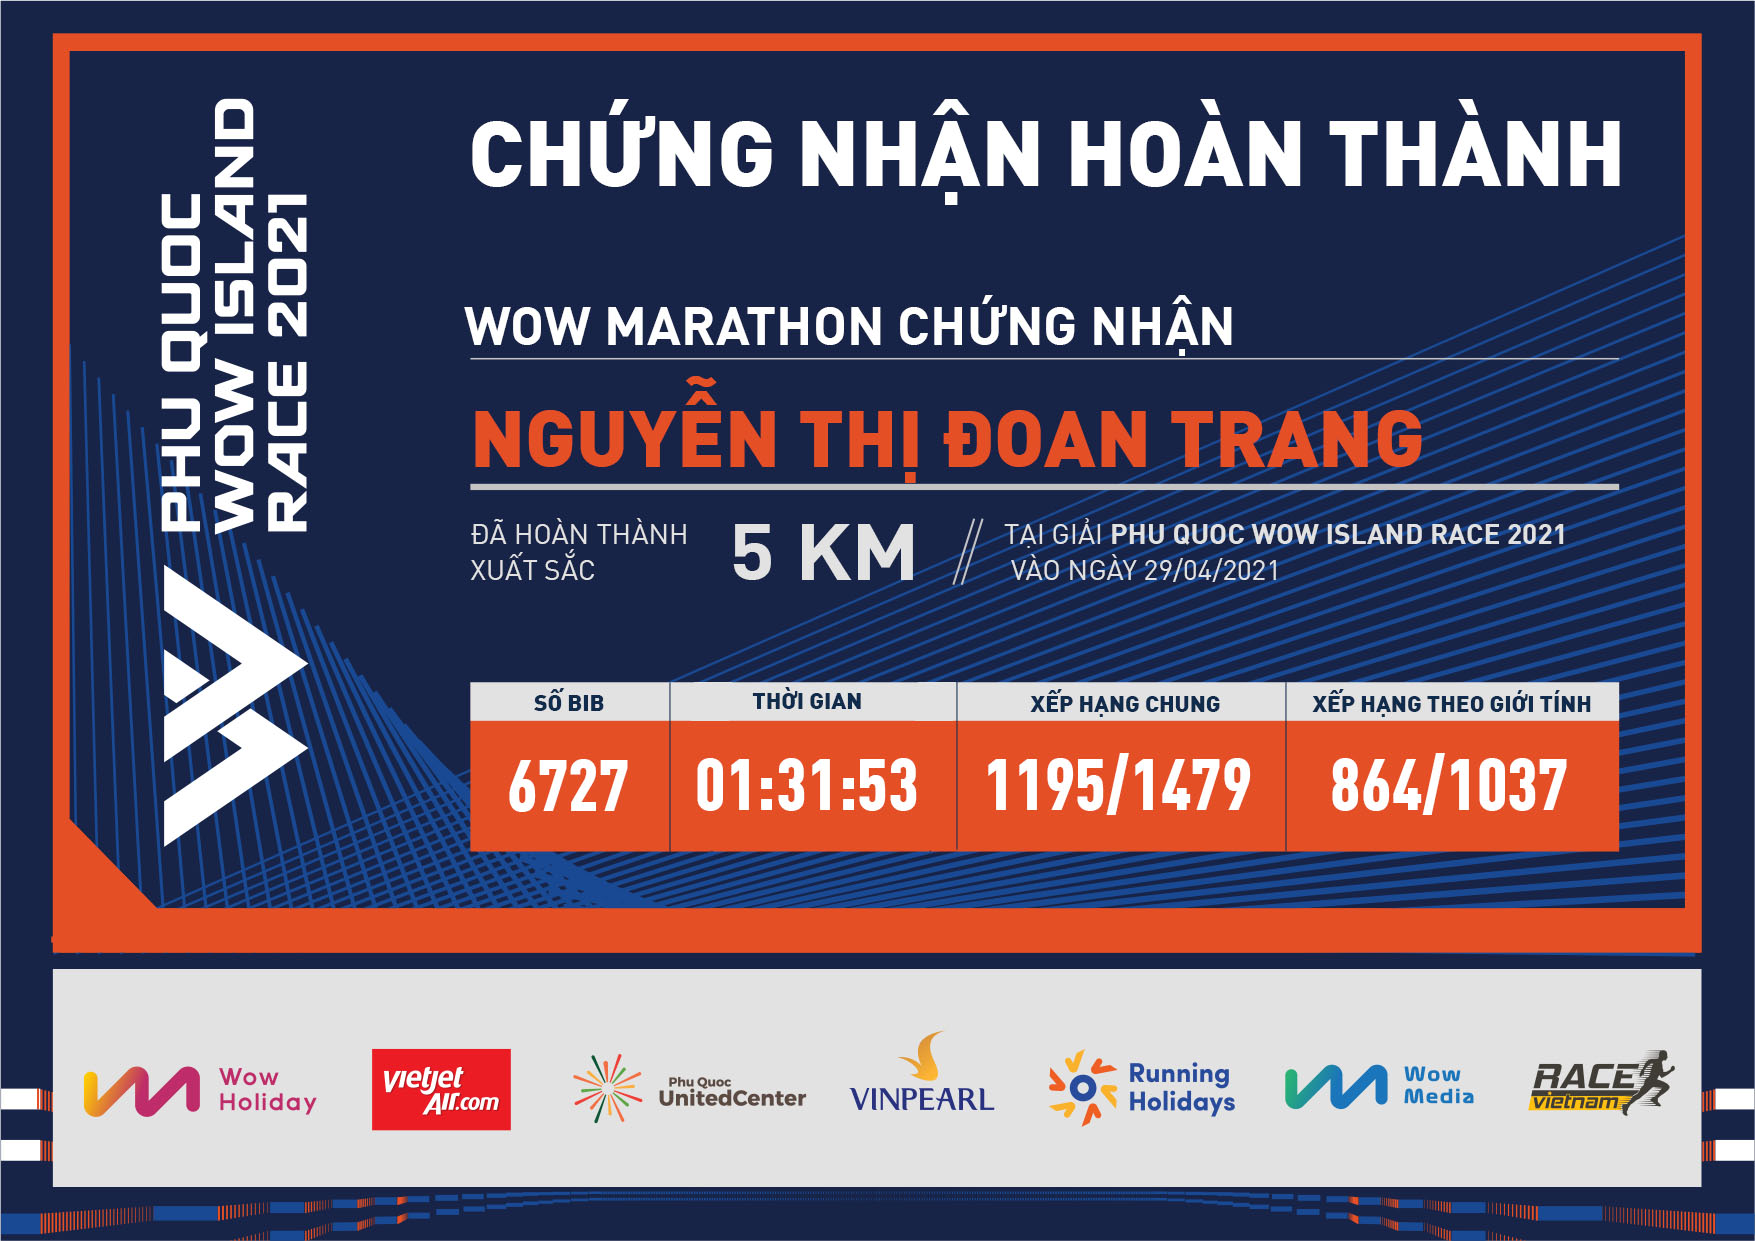 6727 - Nguyễn Thị Đoan Trang